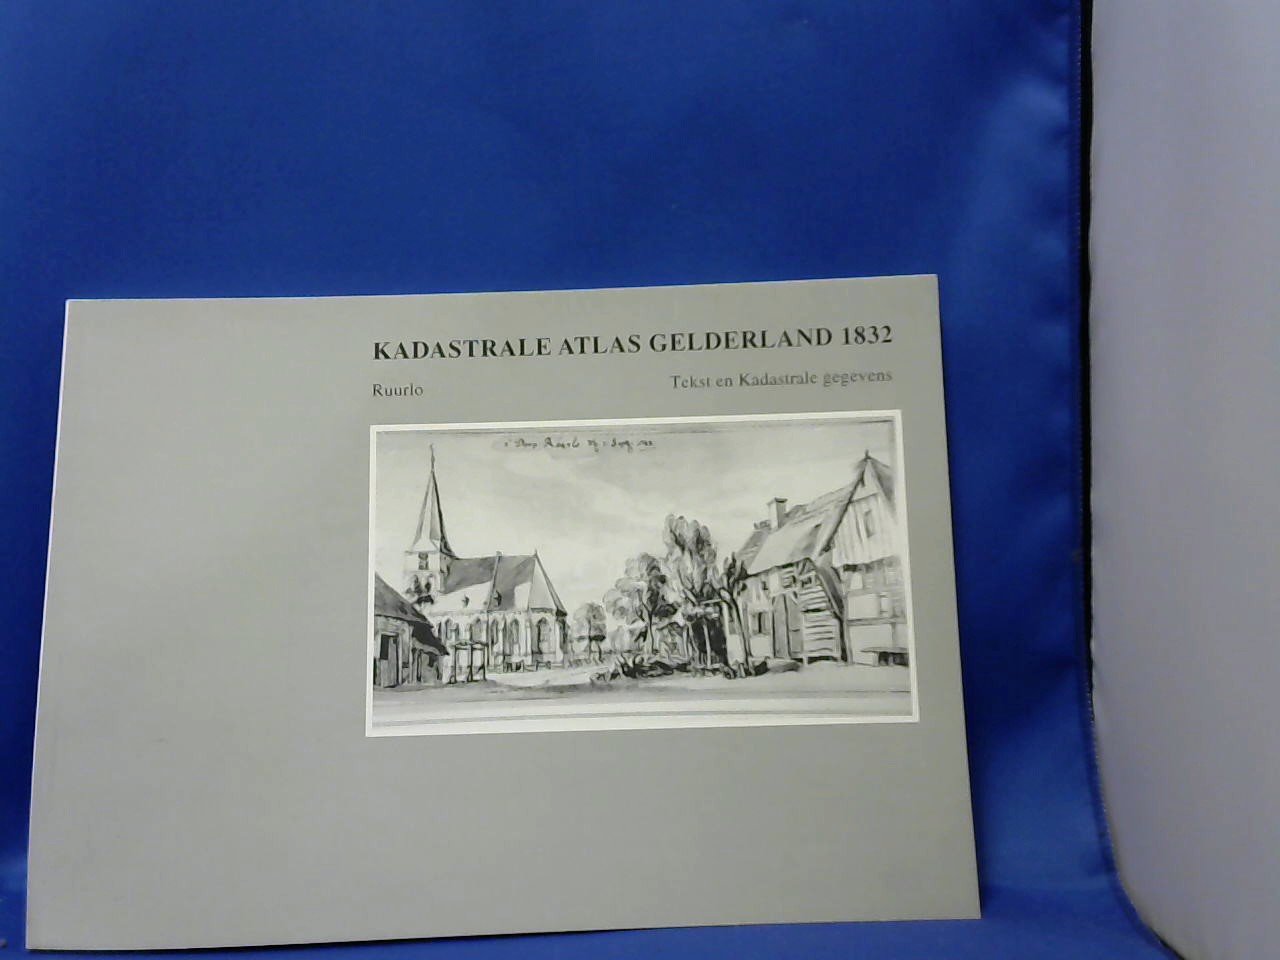 Stichting Werkgroep Kadastrale Atlas Gelderland - Kadastrale Atlas Gelderland 1832  Ruurlo, Tekst en Kadastrale gegevens